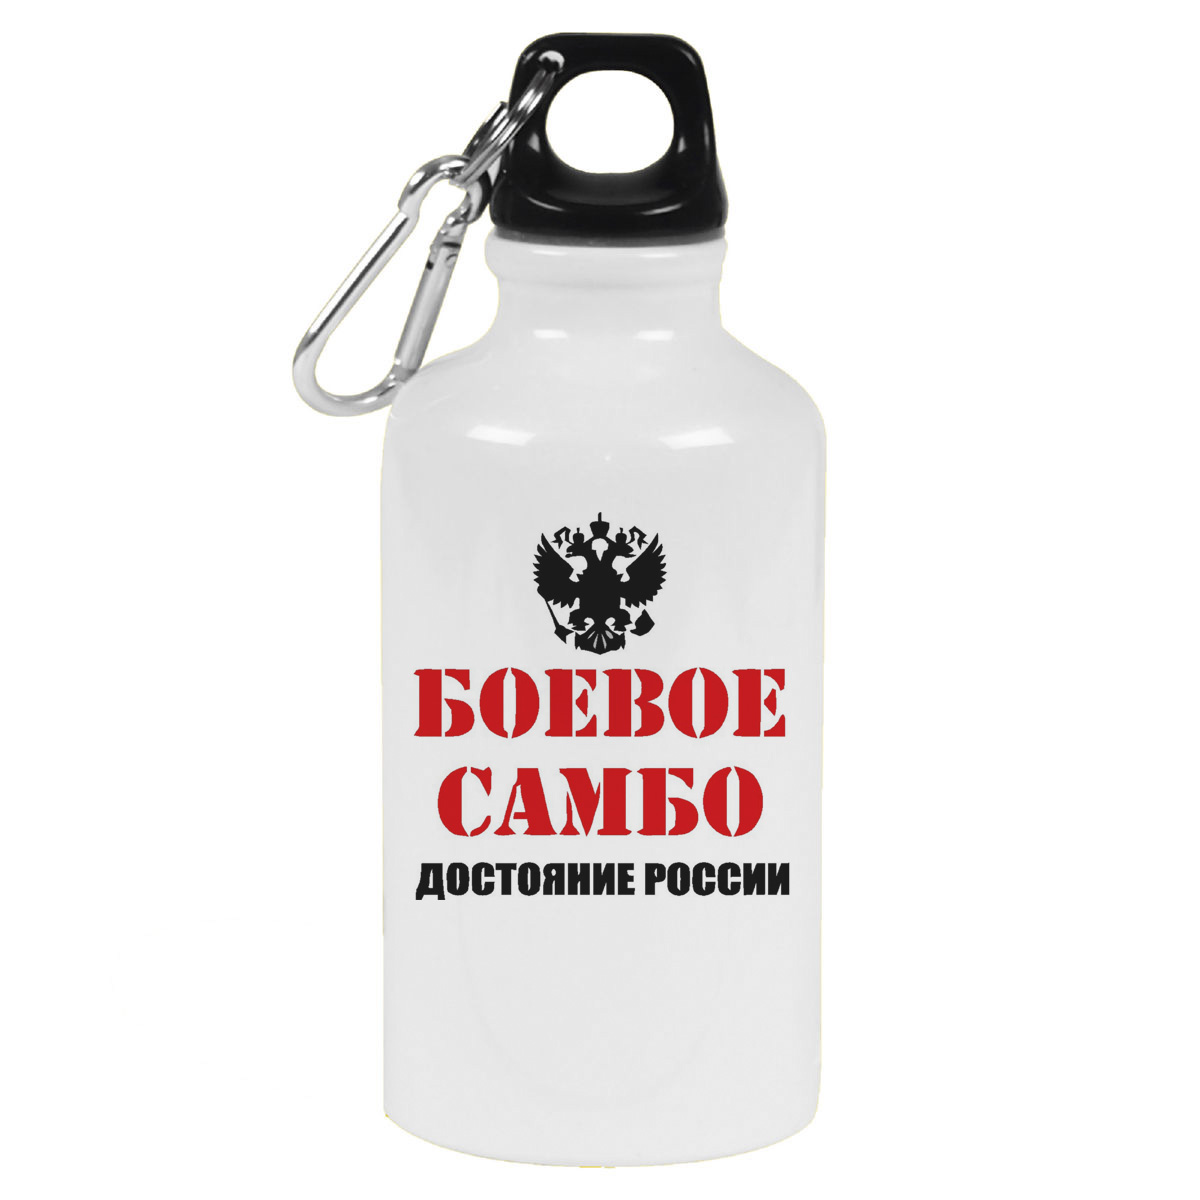 Бутылка спортивная CoolPodarok Бевое самбо достояние России